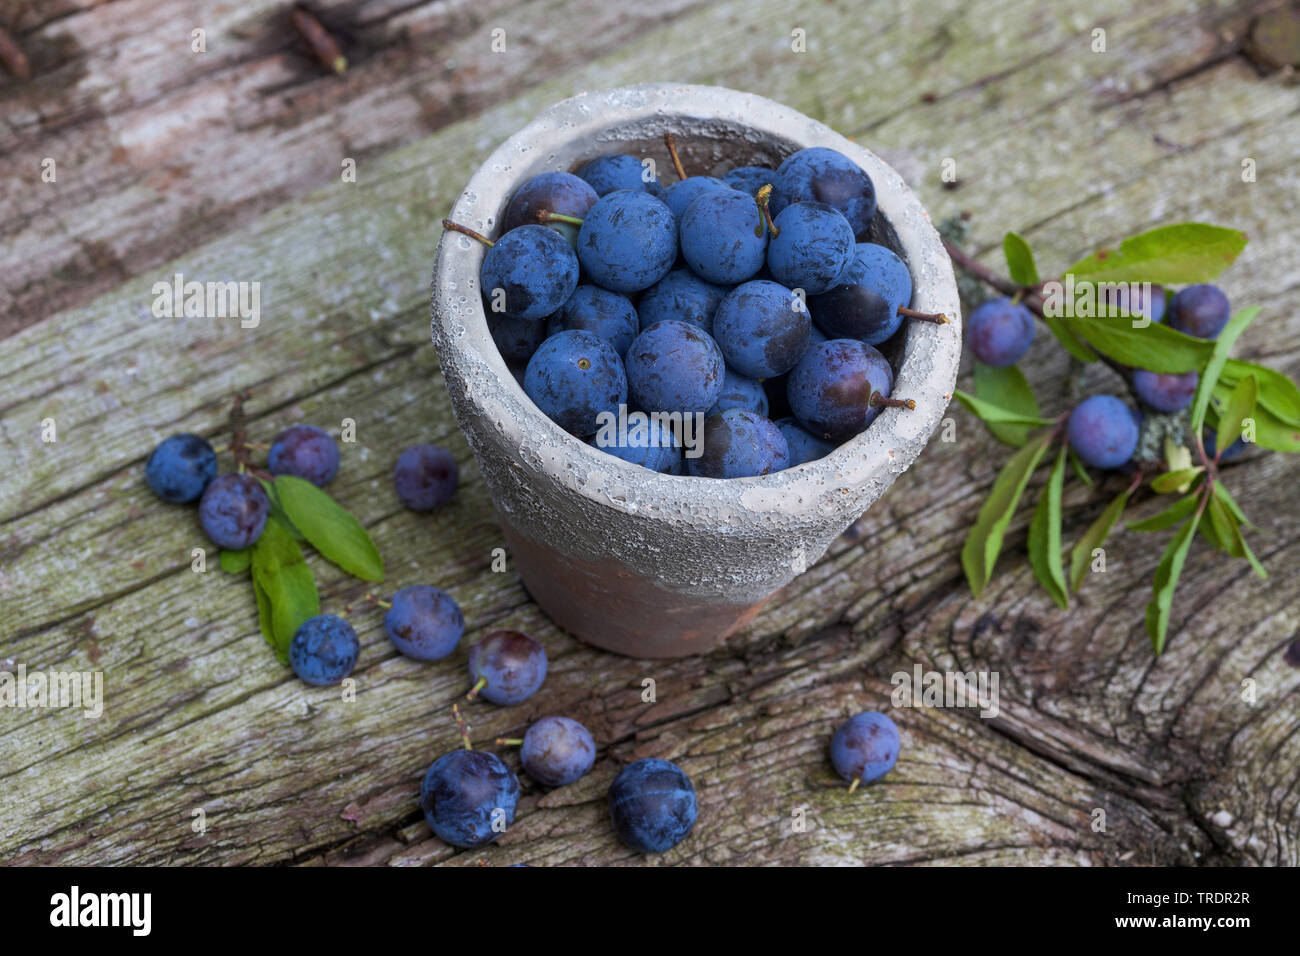 Blackthorn, Schlehe (Prunus spinosa), collectetd Früchte in einem Topf, Deutschland Stockfoto